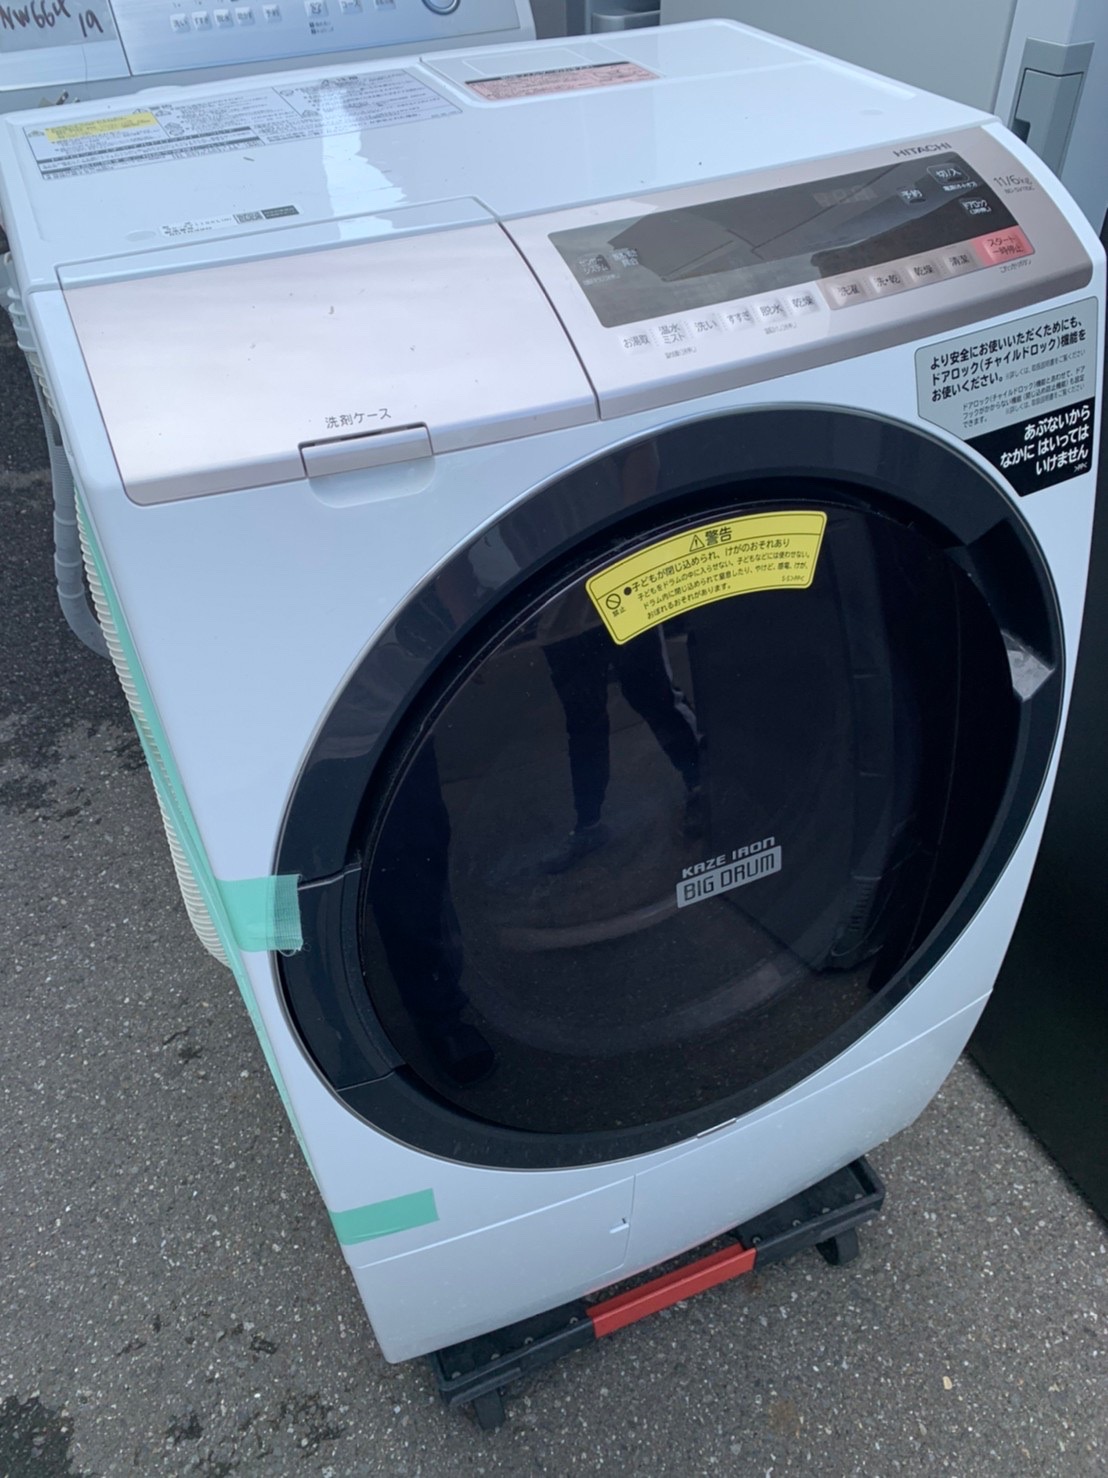 ドラム式洗濯機(HITACHI BD-SV110CL 洗濯11.0kg 乾燥6.0kg 2018年製)を 